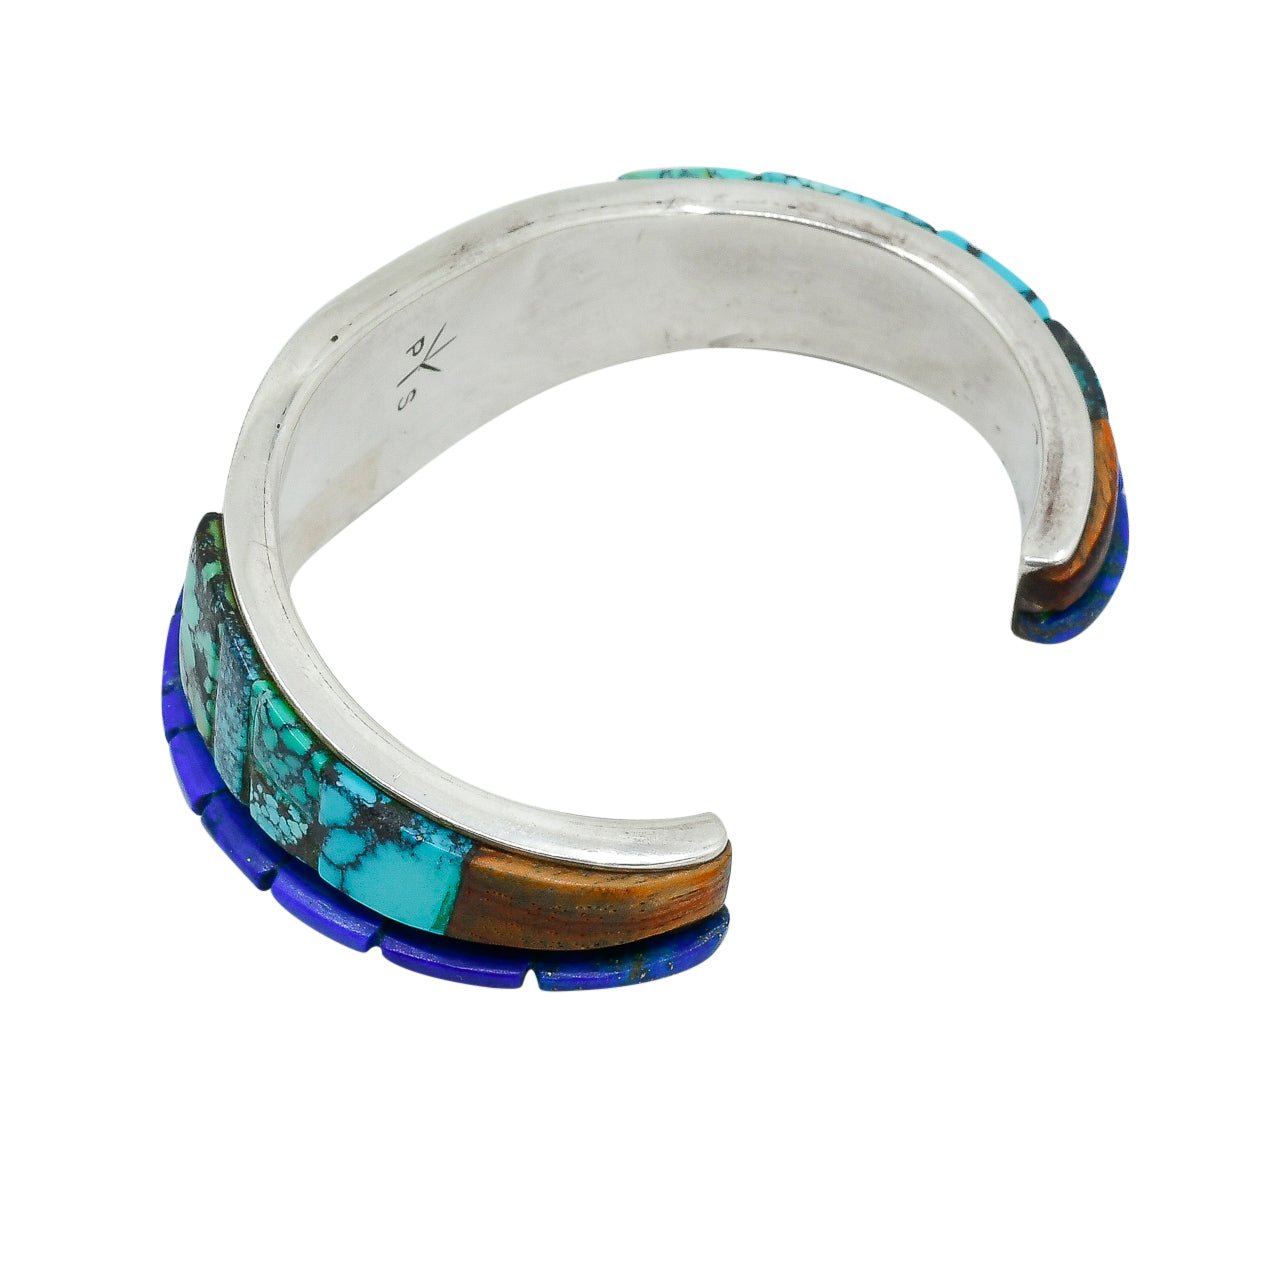 Phillip Sekaquaptewa Bracelet of Inlay Turquoise and Lapis - Turquoise & Tufa